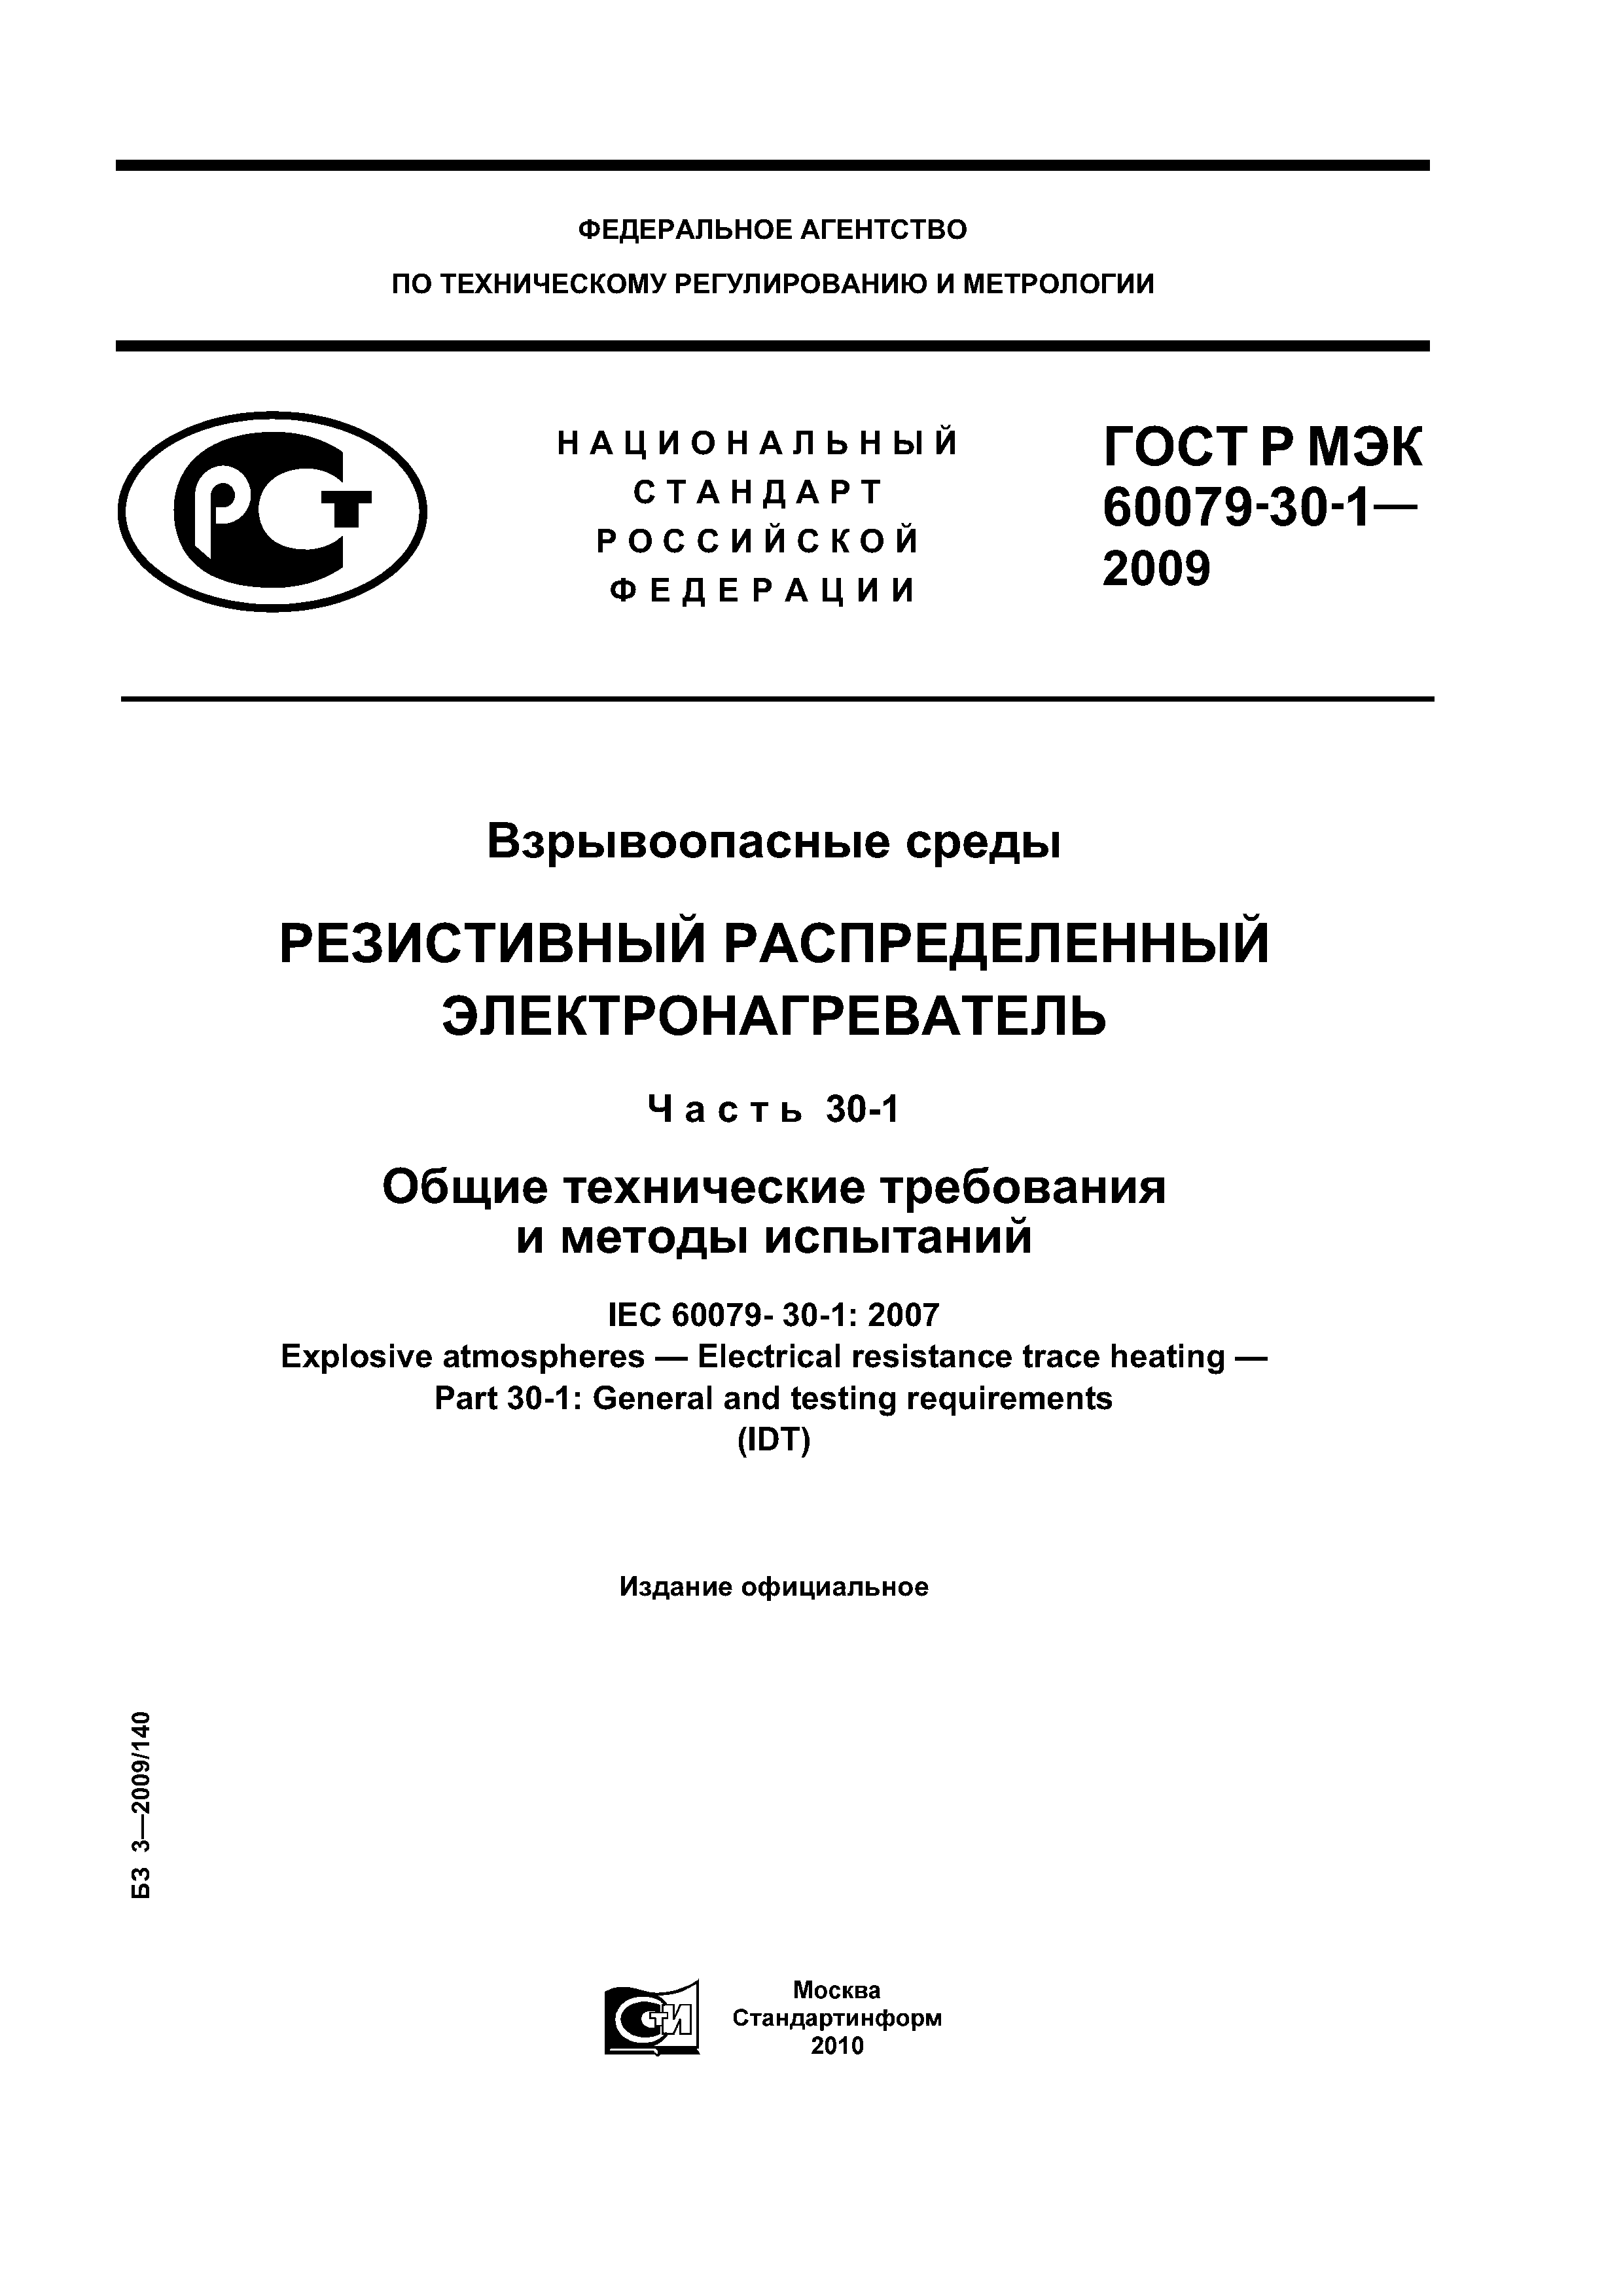 ГОСТ Р МЭК 60079-30-1-2009